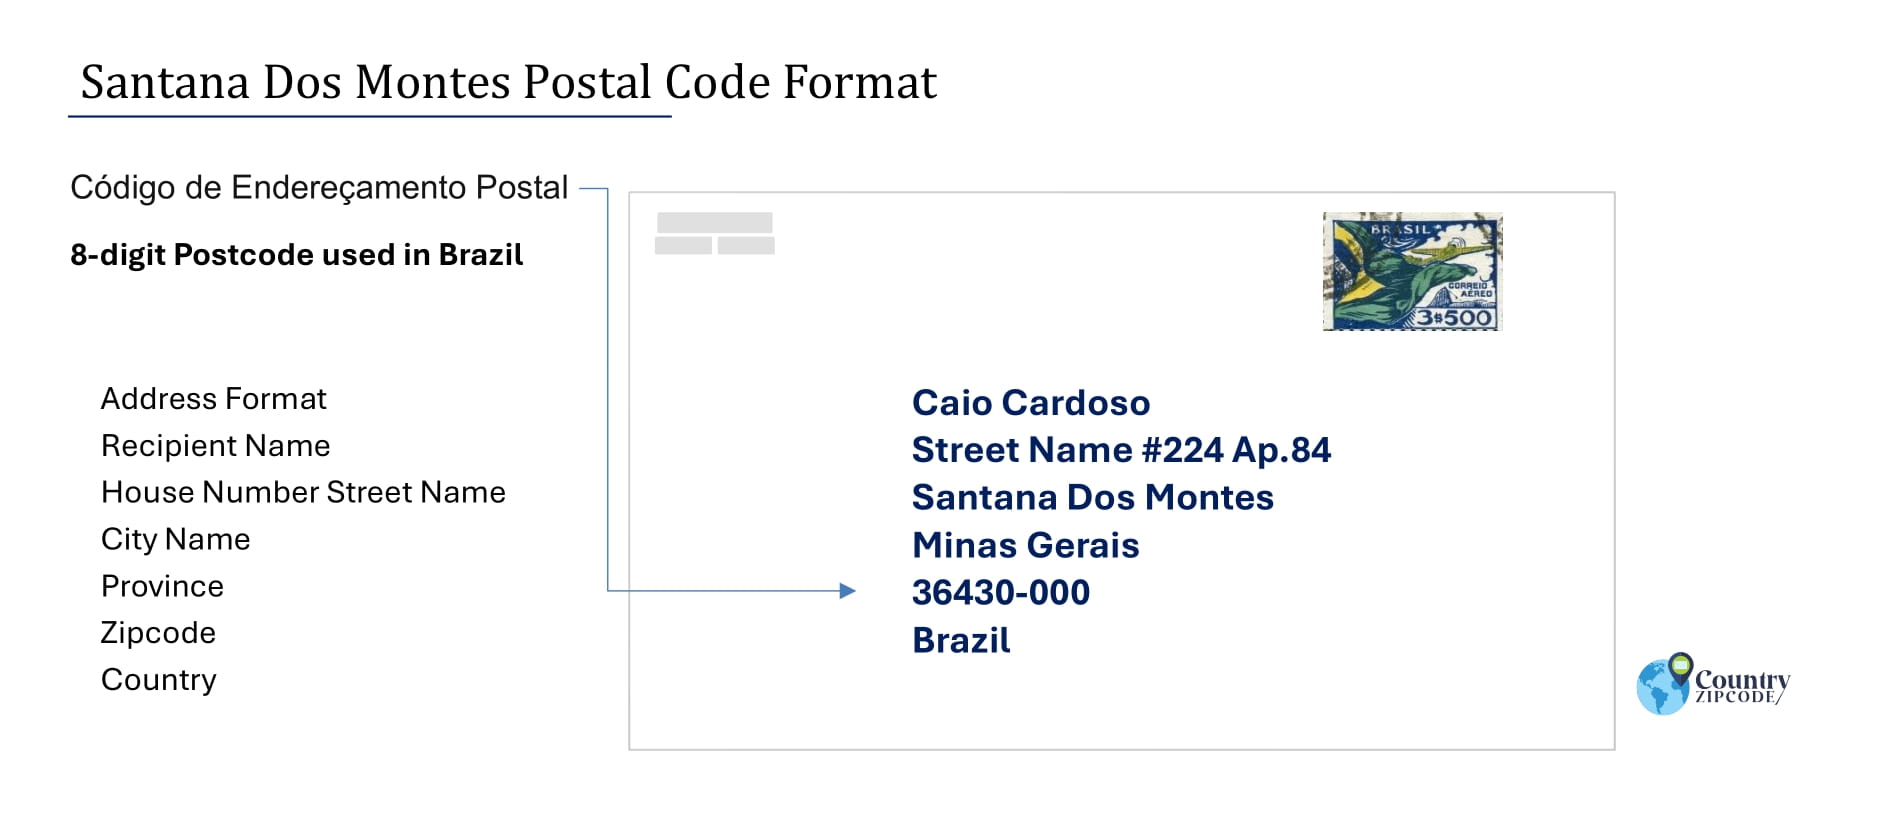 Example of Codigo de Enderecamento Postal and Address format of Santana Dos Montes Brazil